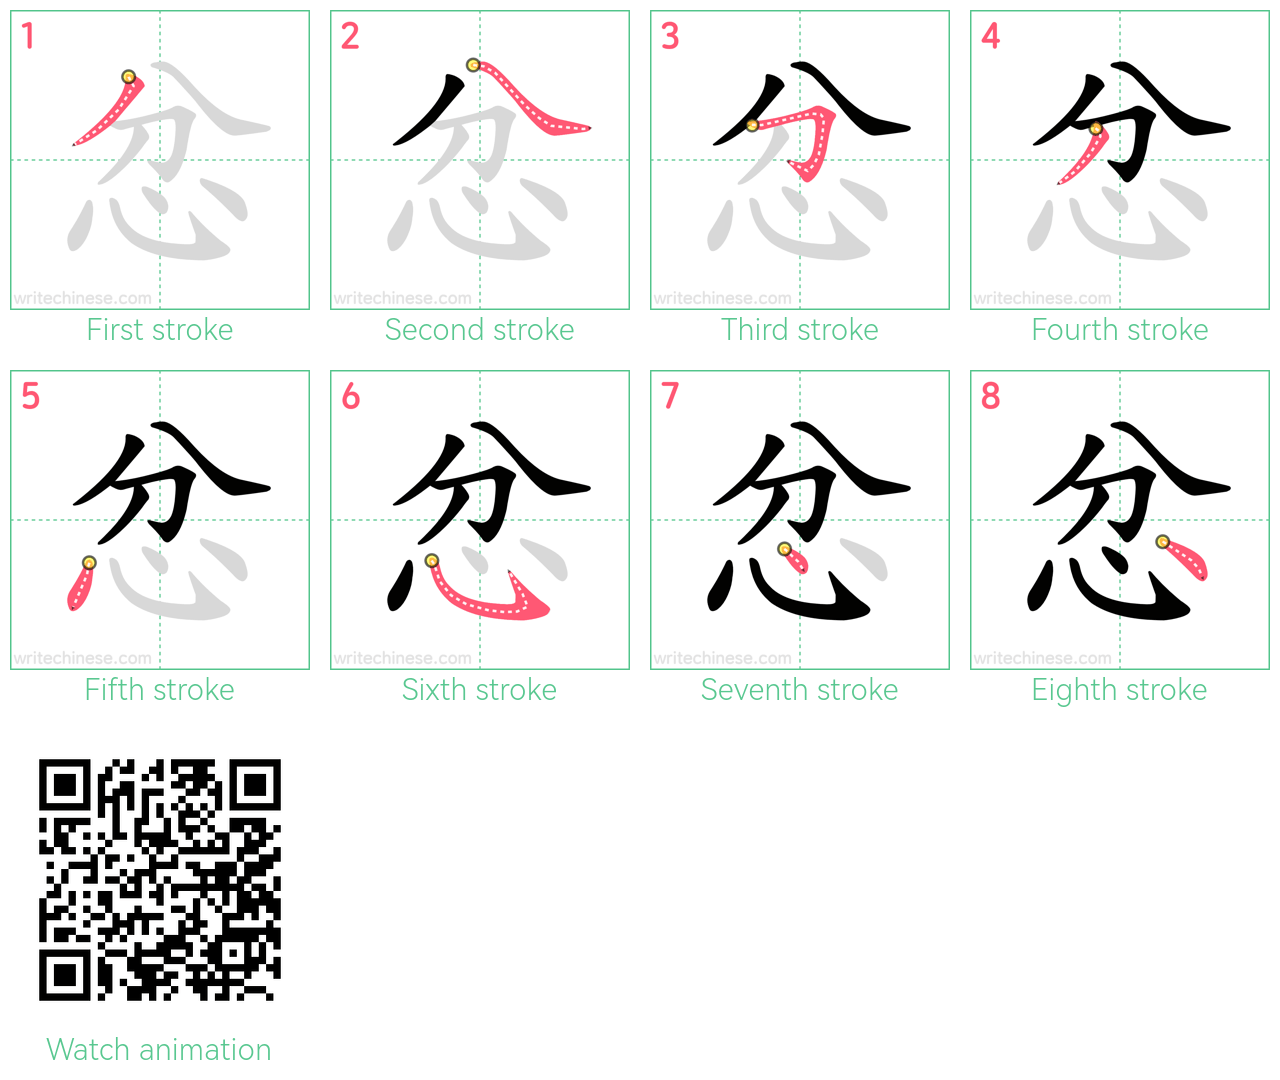 忿 step-by-step stroke order diagrams